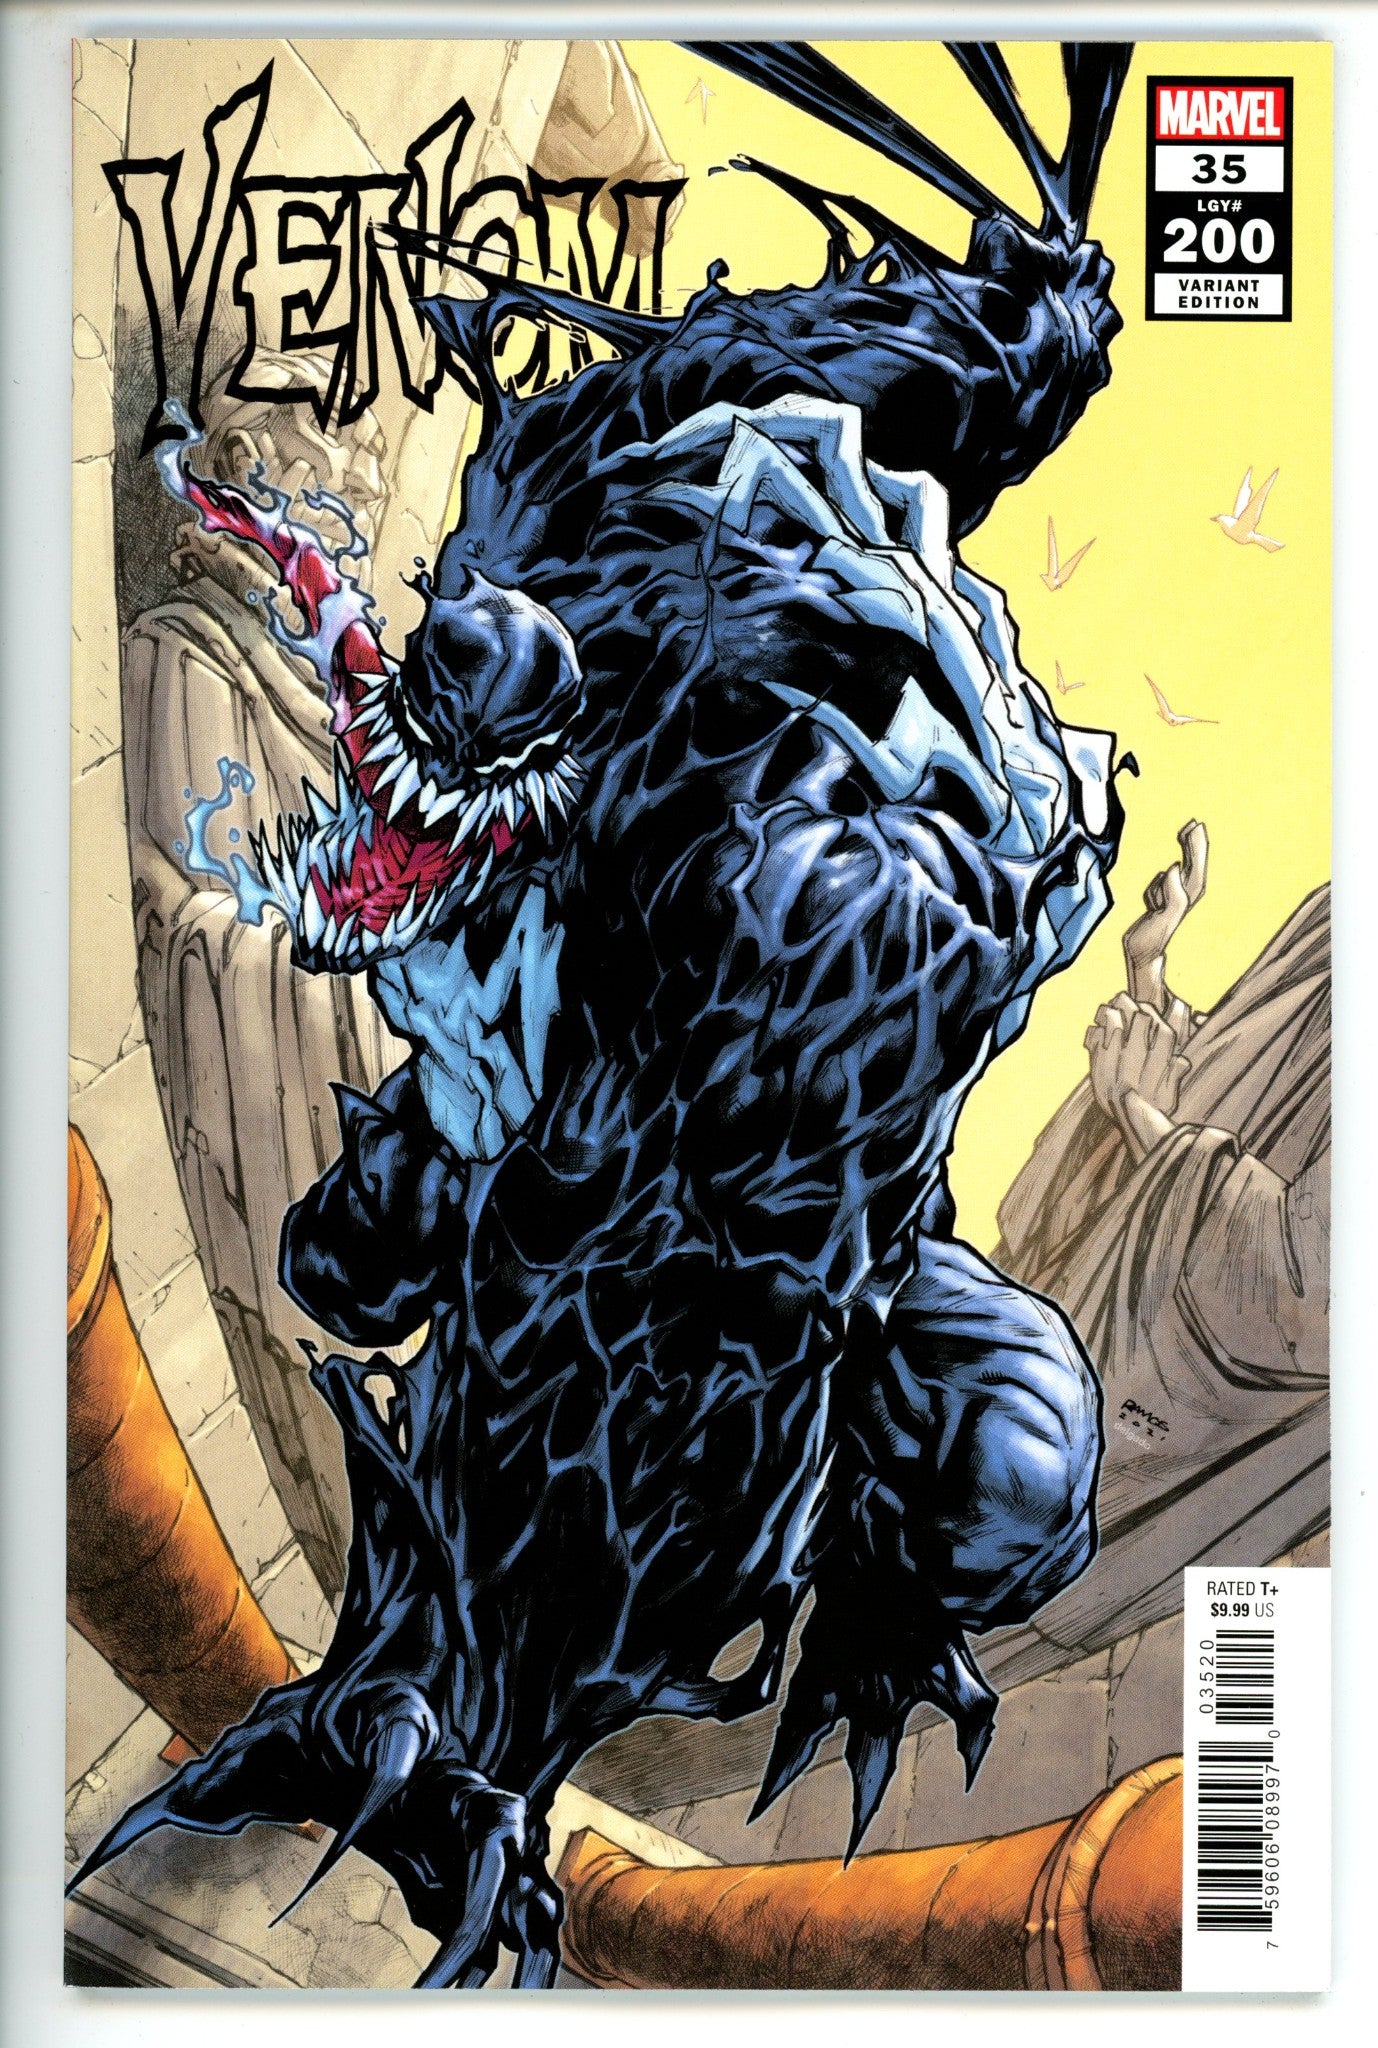 Venom Vol 4 35 (200) Ramos Variant (2021)